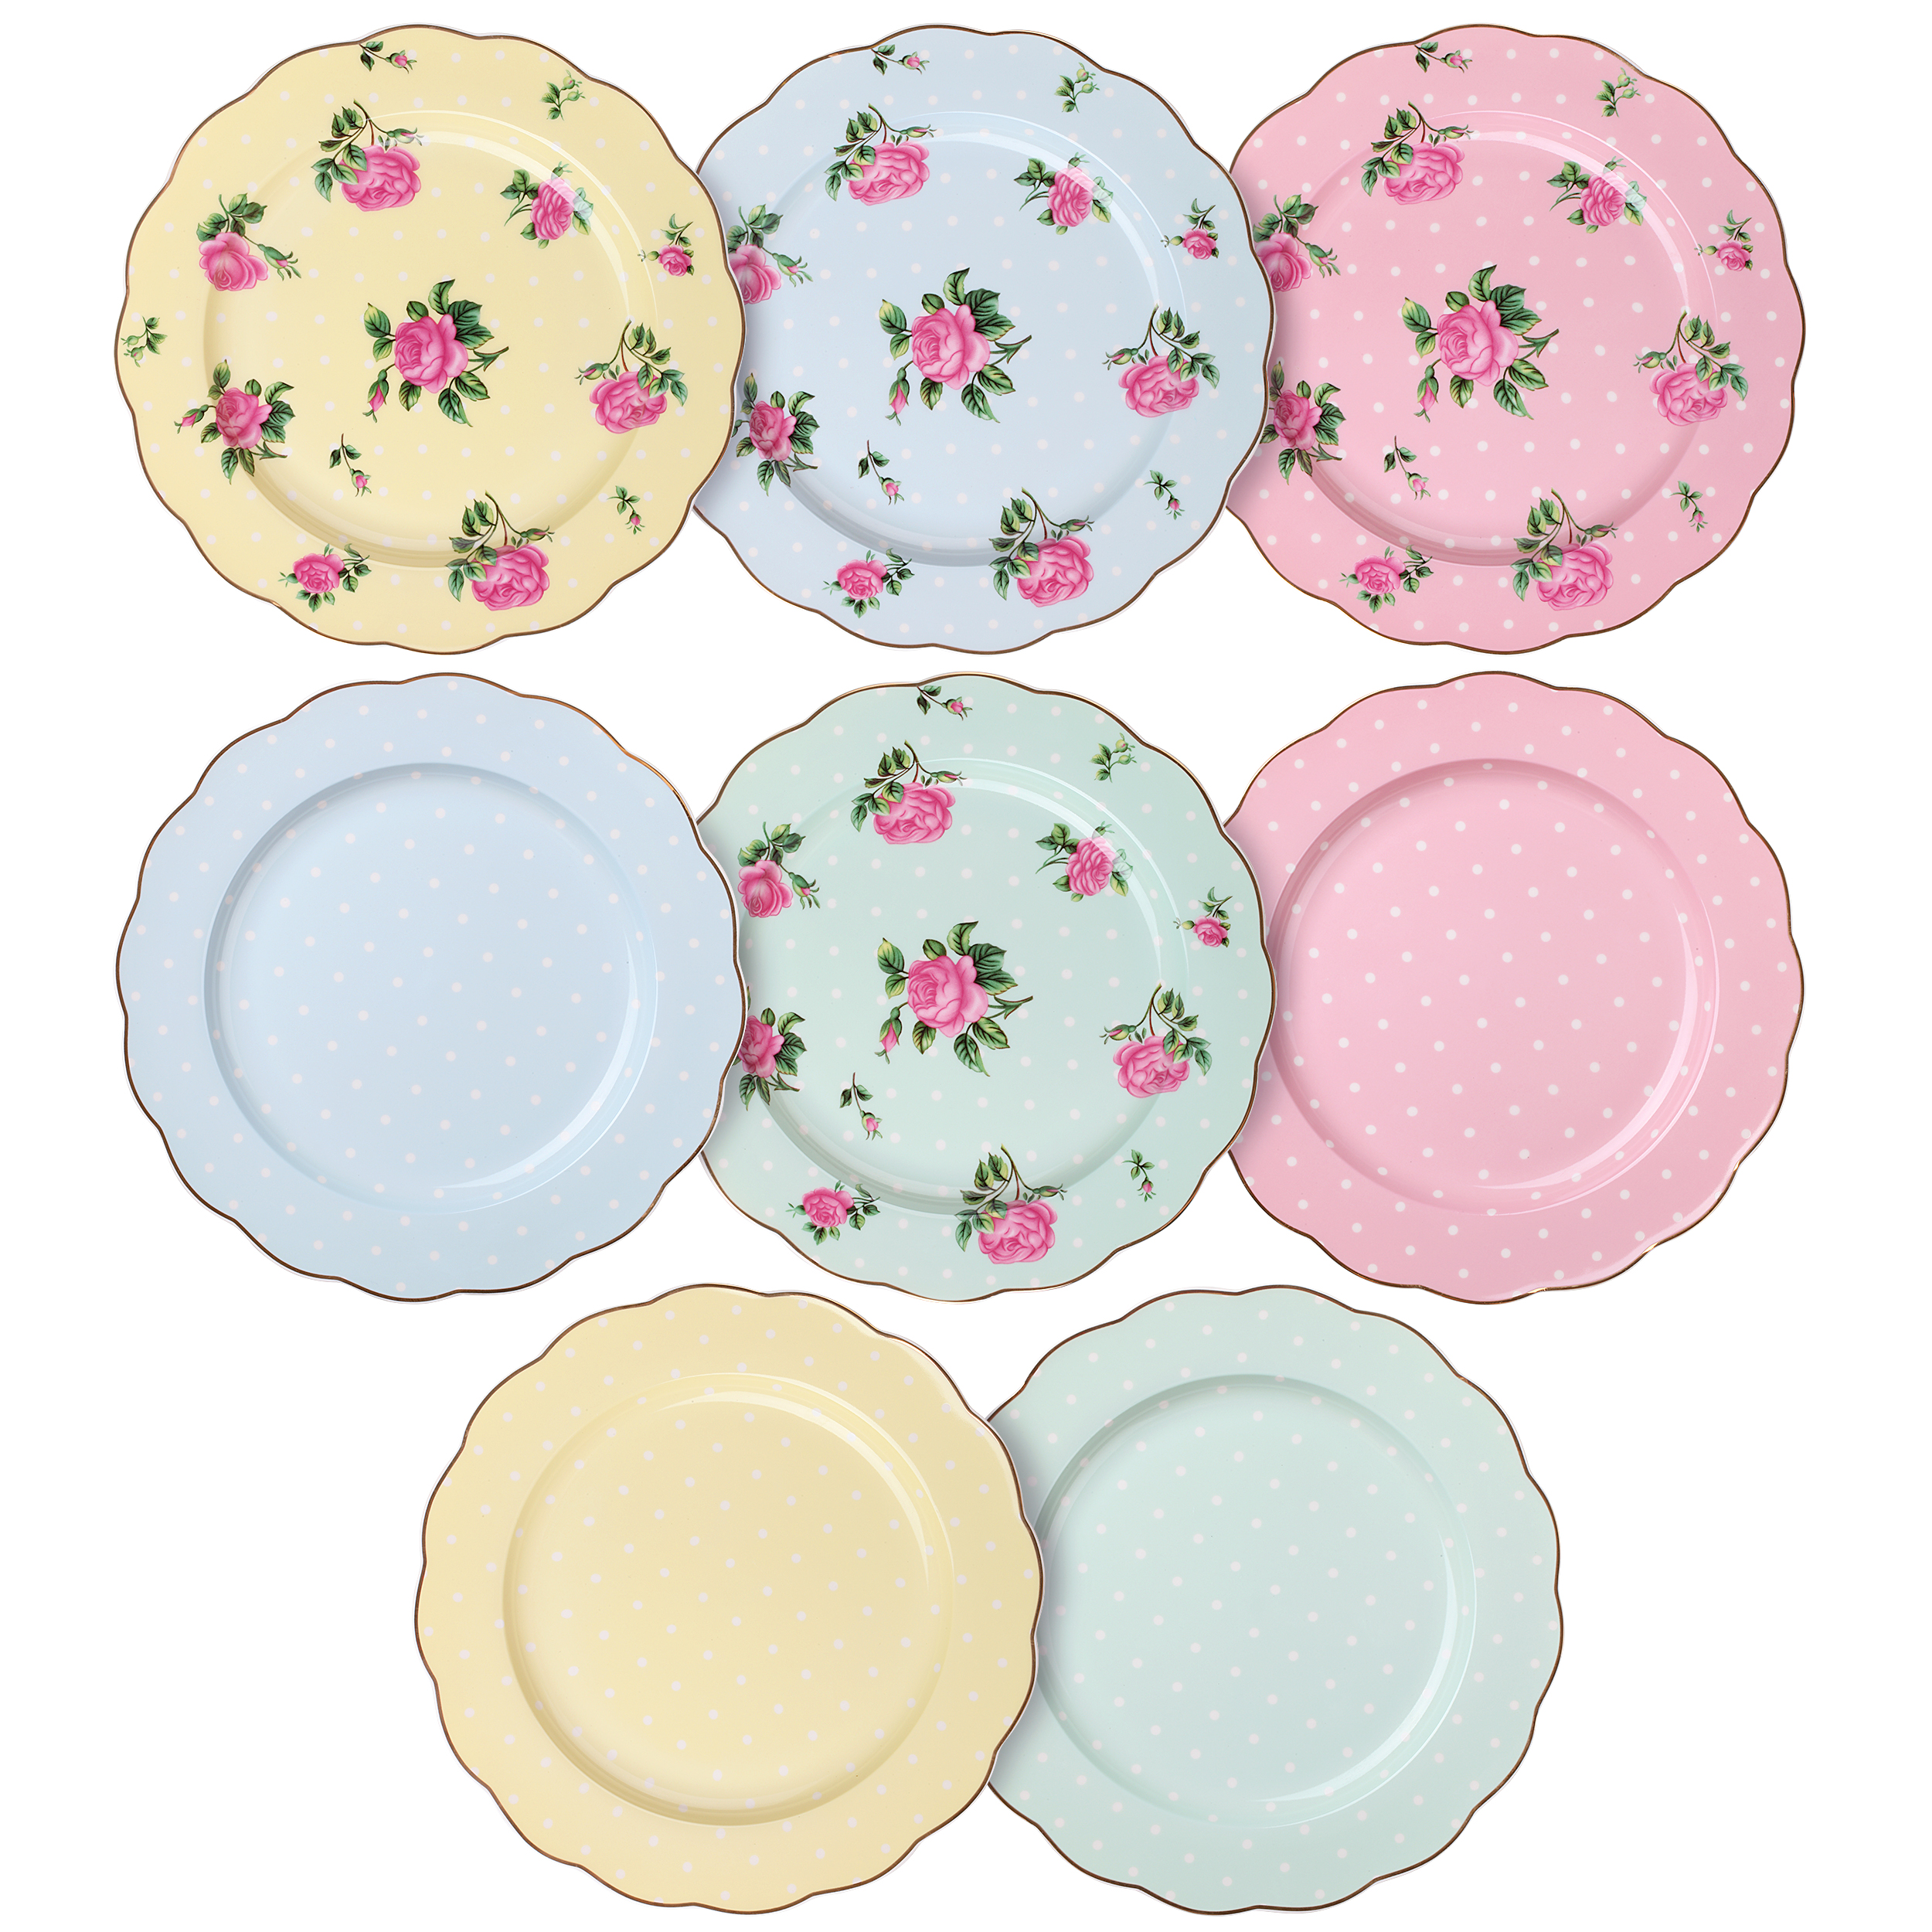 BTäT- 8 inch Multicolor Floral Dessert Plates (set of 8) – BTAT